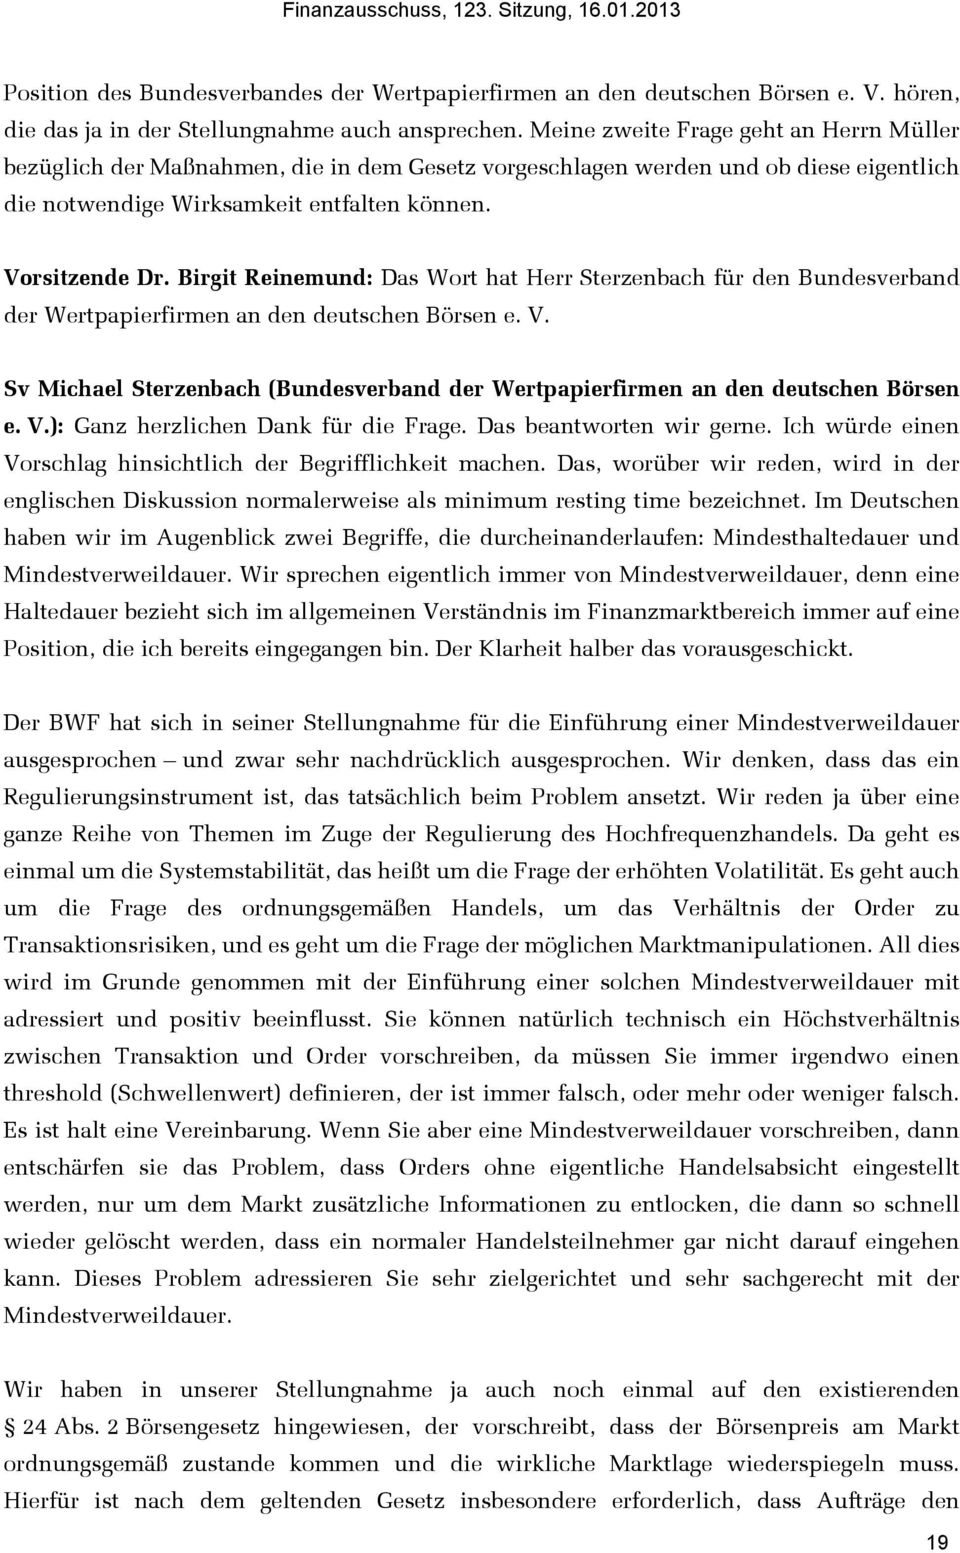 Birgit Reinemund: Das Wort hat Herr Sterzenbach für den Bundesverband der Wertpapierfirmen an den deutschen Börsen e. V.